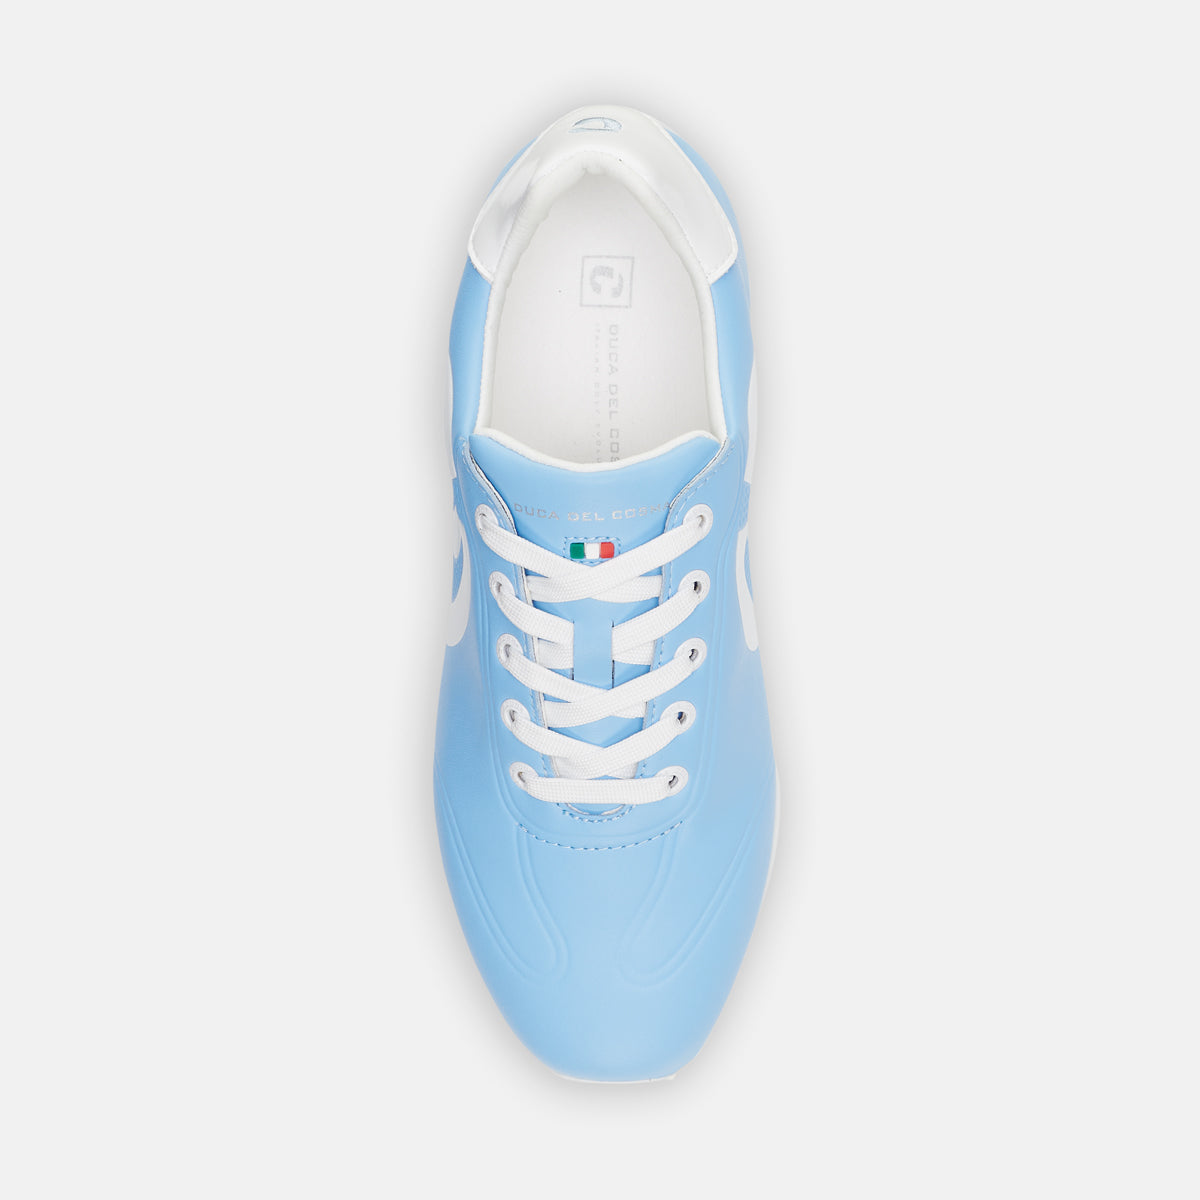 Queenscup Light Blue - Women's Golf Shoe